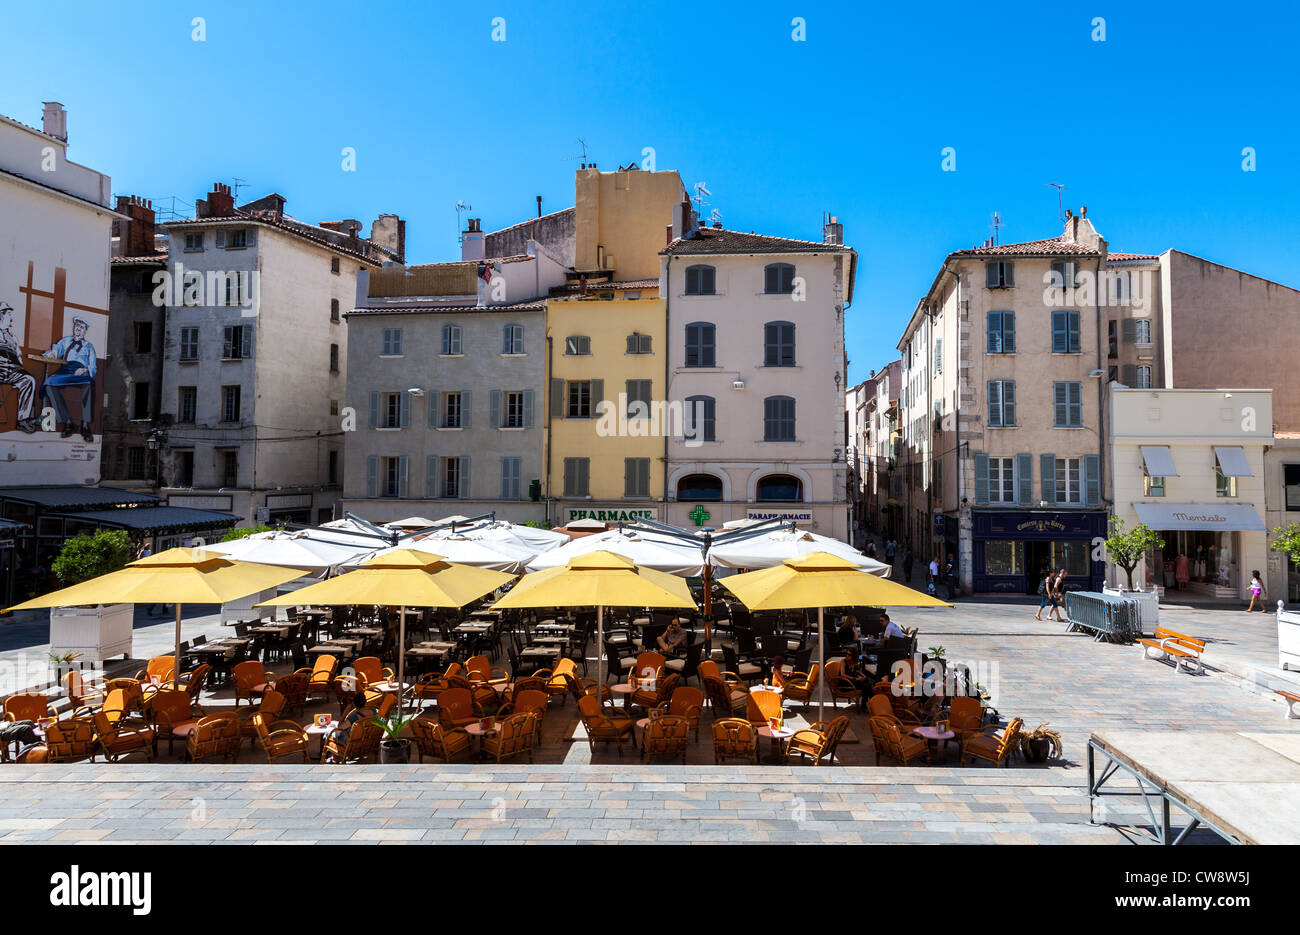 Francia, Tolone, un open air coffee bar in una piazza del paese vecchio centro. Foto Stock